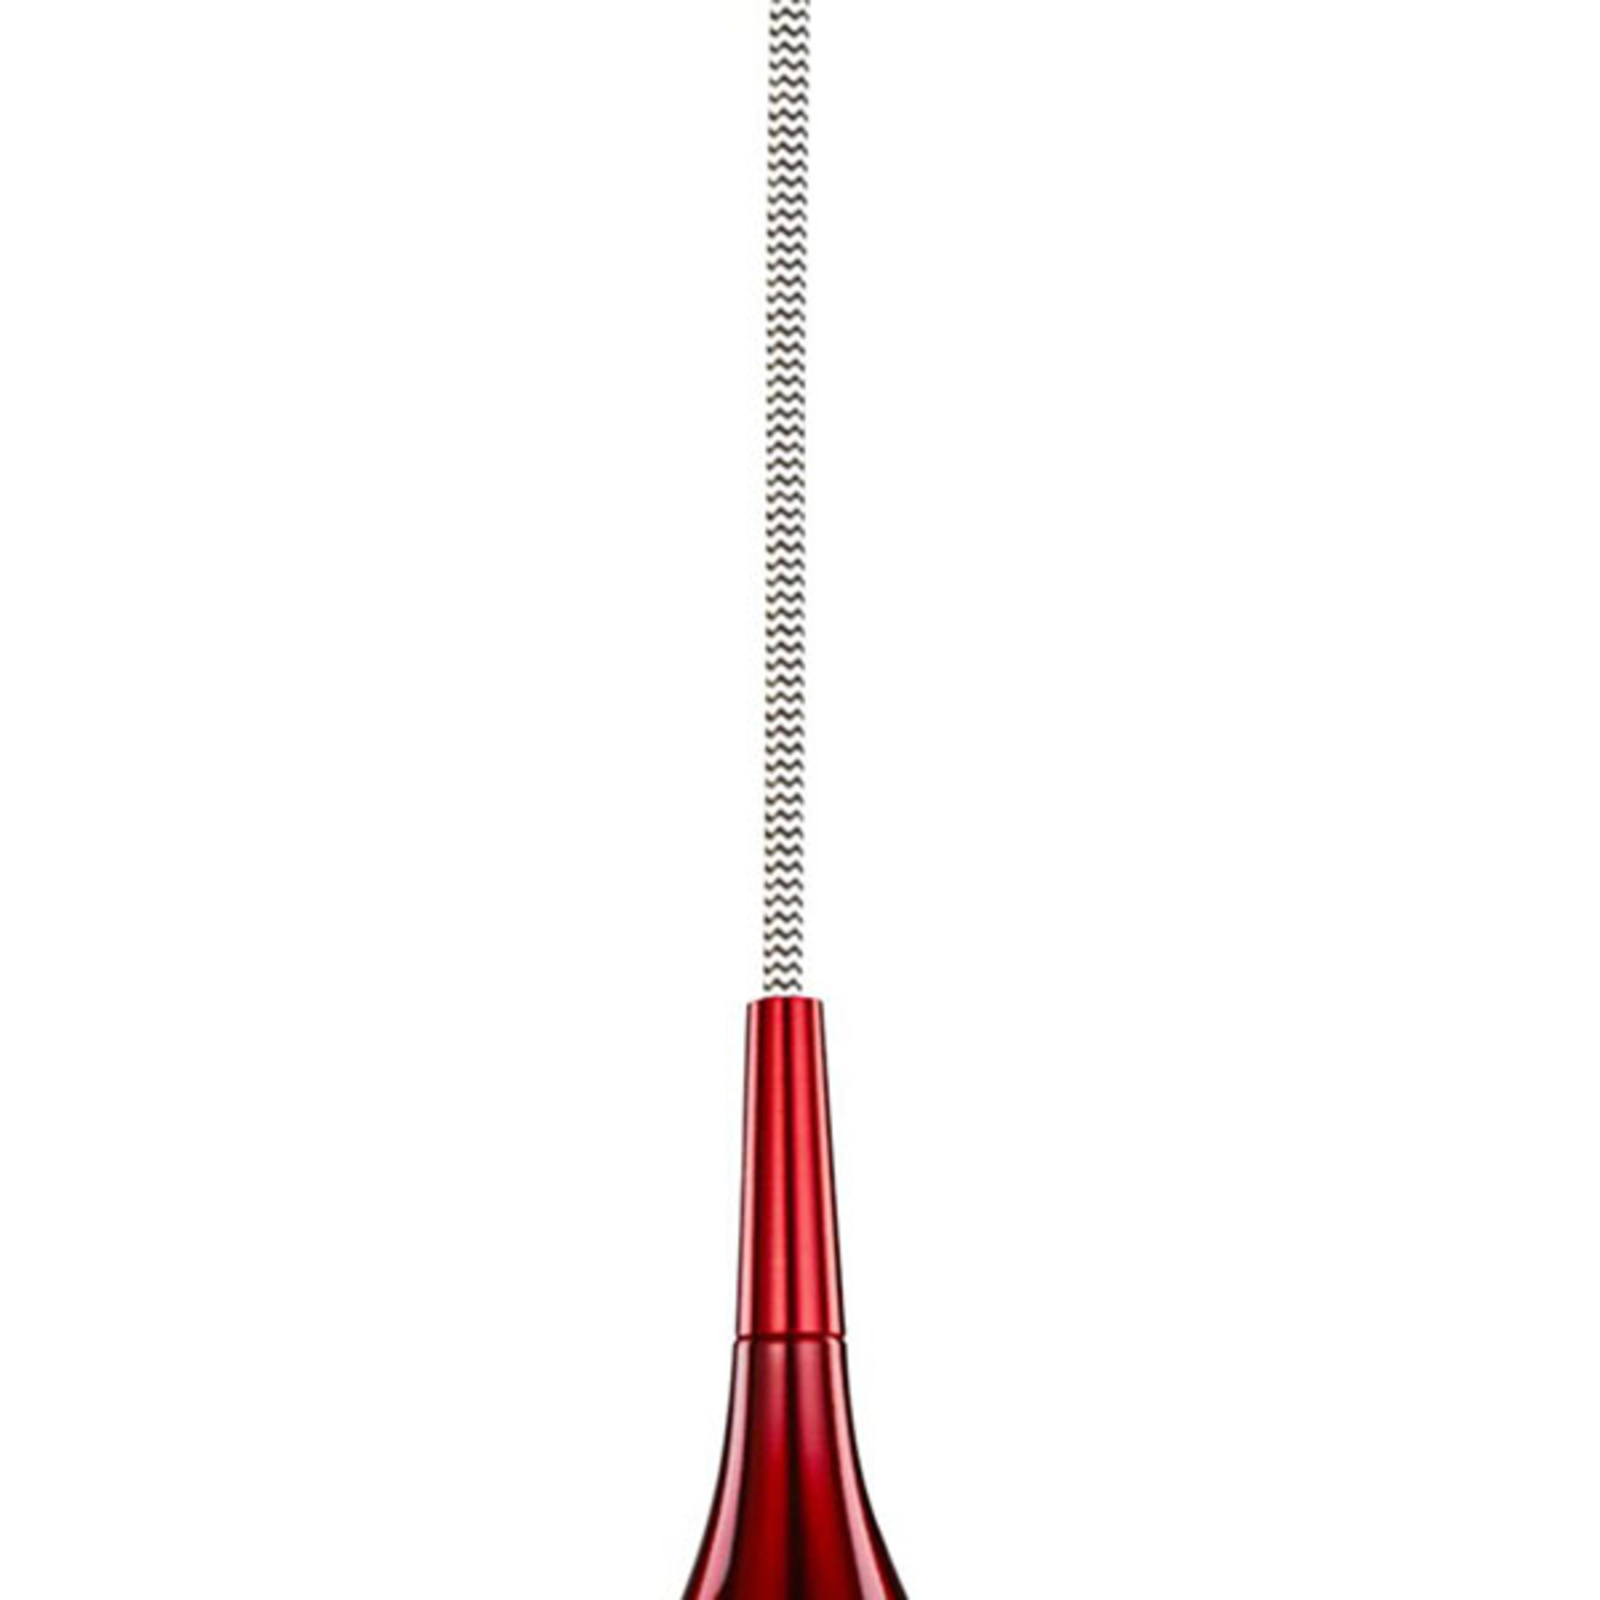 Vibruojantis pakabinamas šviestuvas Ø 12 cm, raudonos spalvos